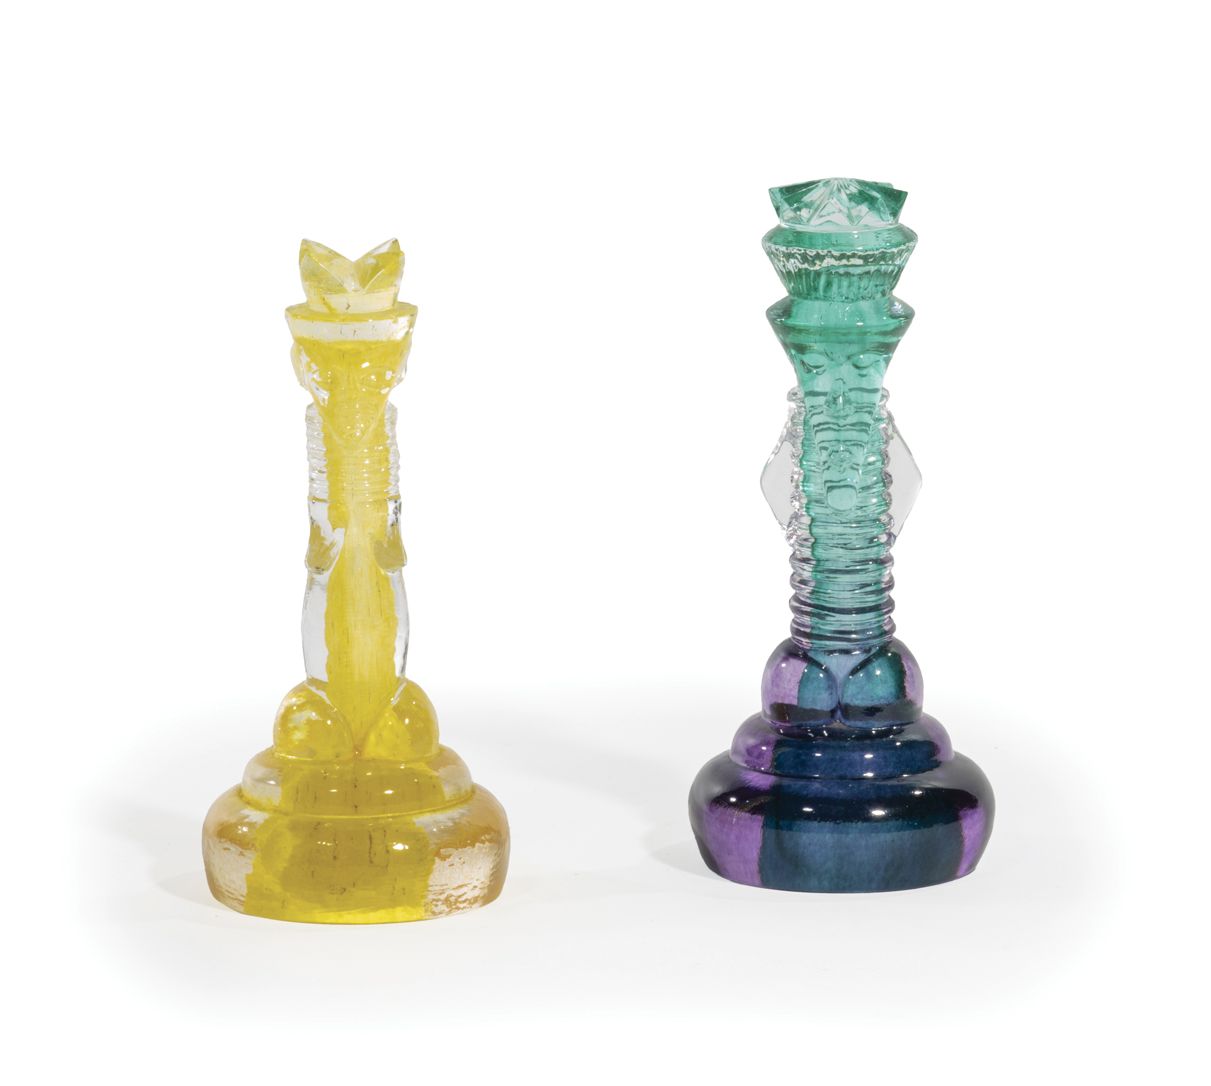 Null 由谢尔-恩格曼（生于1946年）为Kosta Boda（瑞典玻璃厂）创作。

国际象棋的国王和王后。

两个压制成型的玻璃棋子，有黄色，淡紫色和绿色。&hellip;